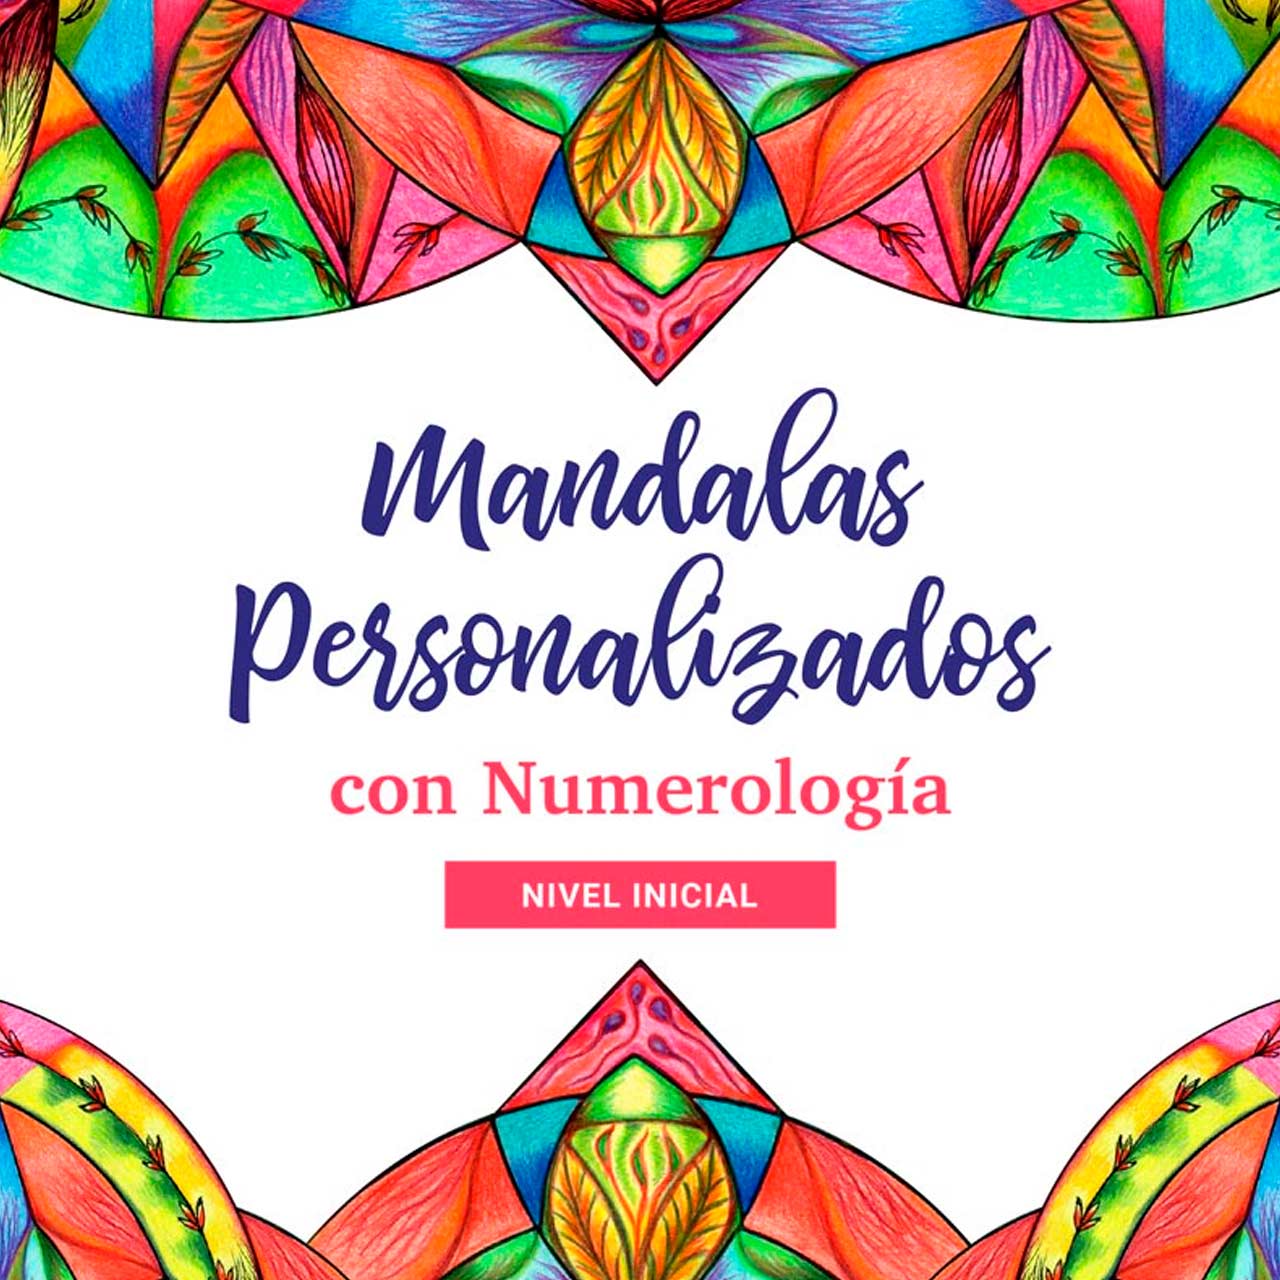 Mandalas personalizados con Numerología Nivel Inicial